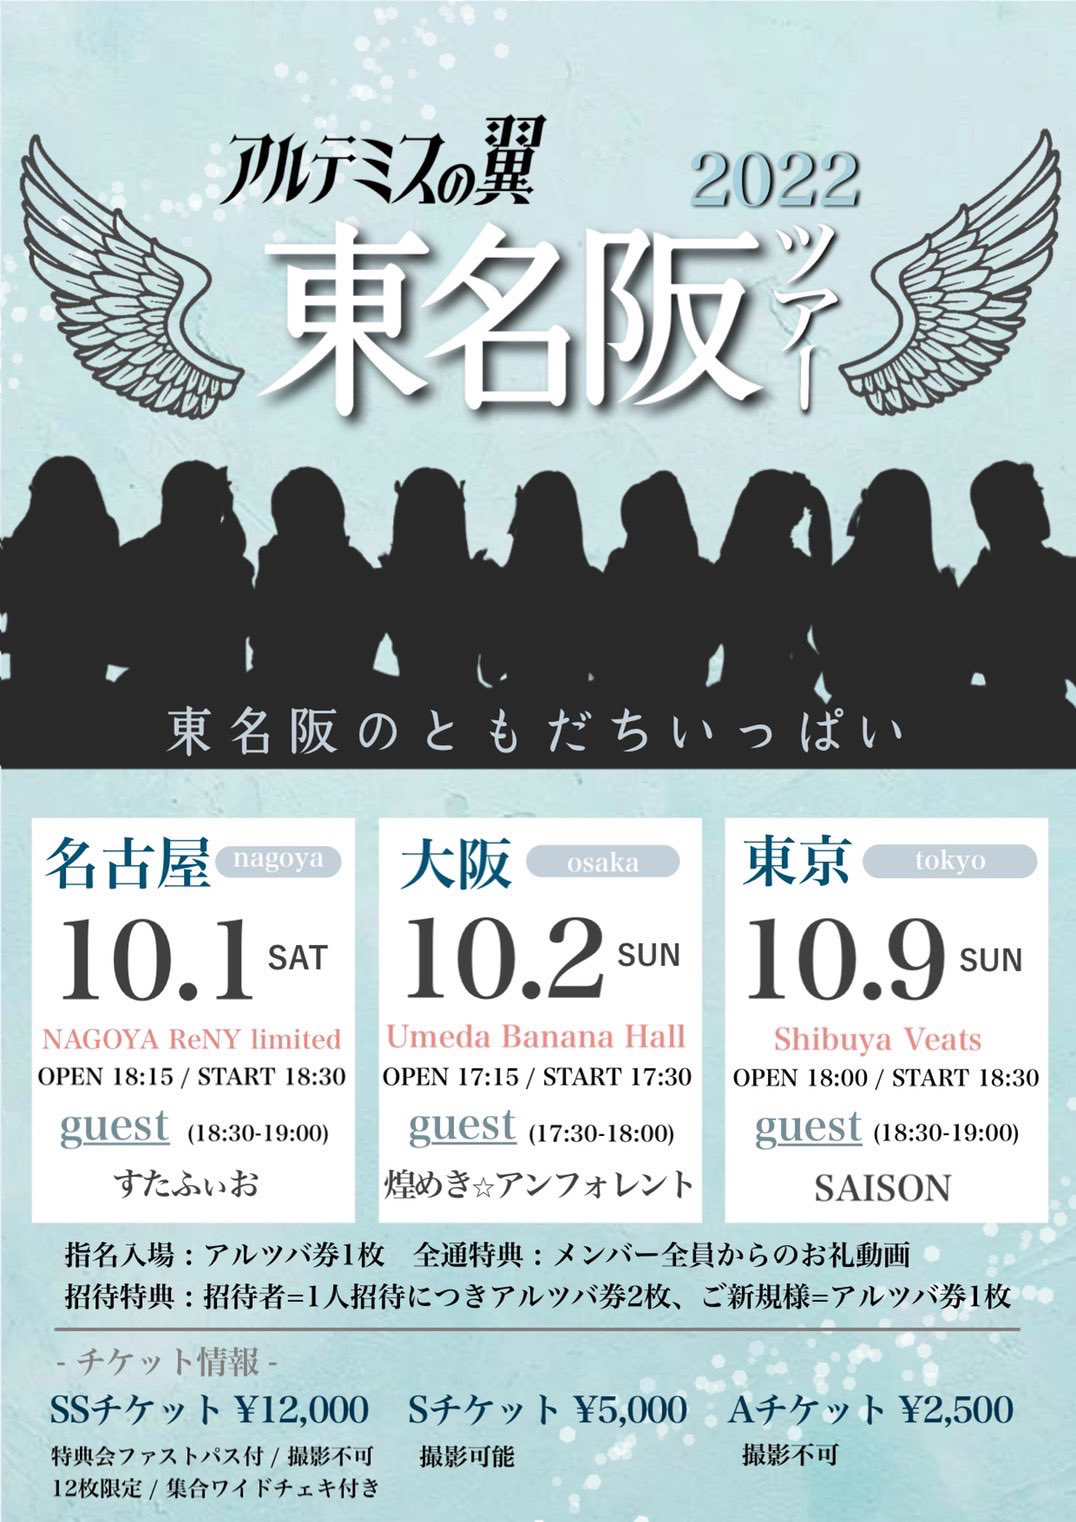 アルテミスの翼 東名阪ツアー2022 「東名阪のともだちいっぱい」名古屋公演